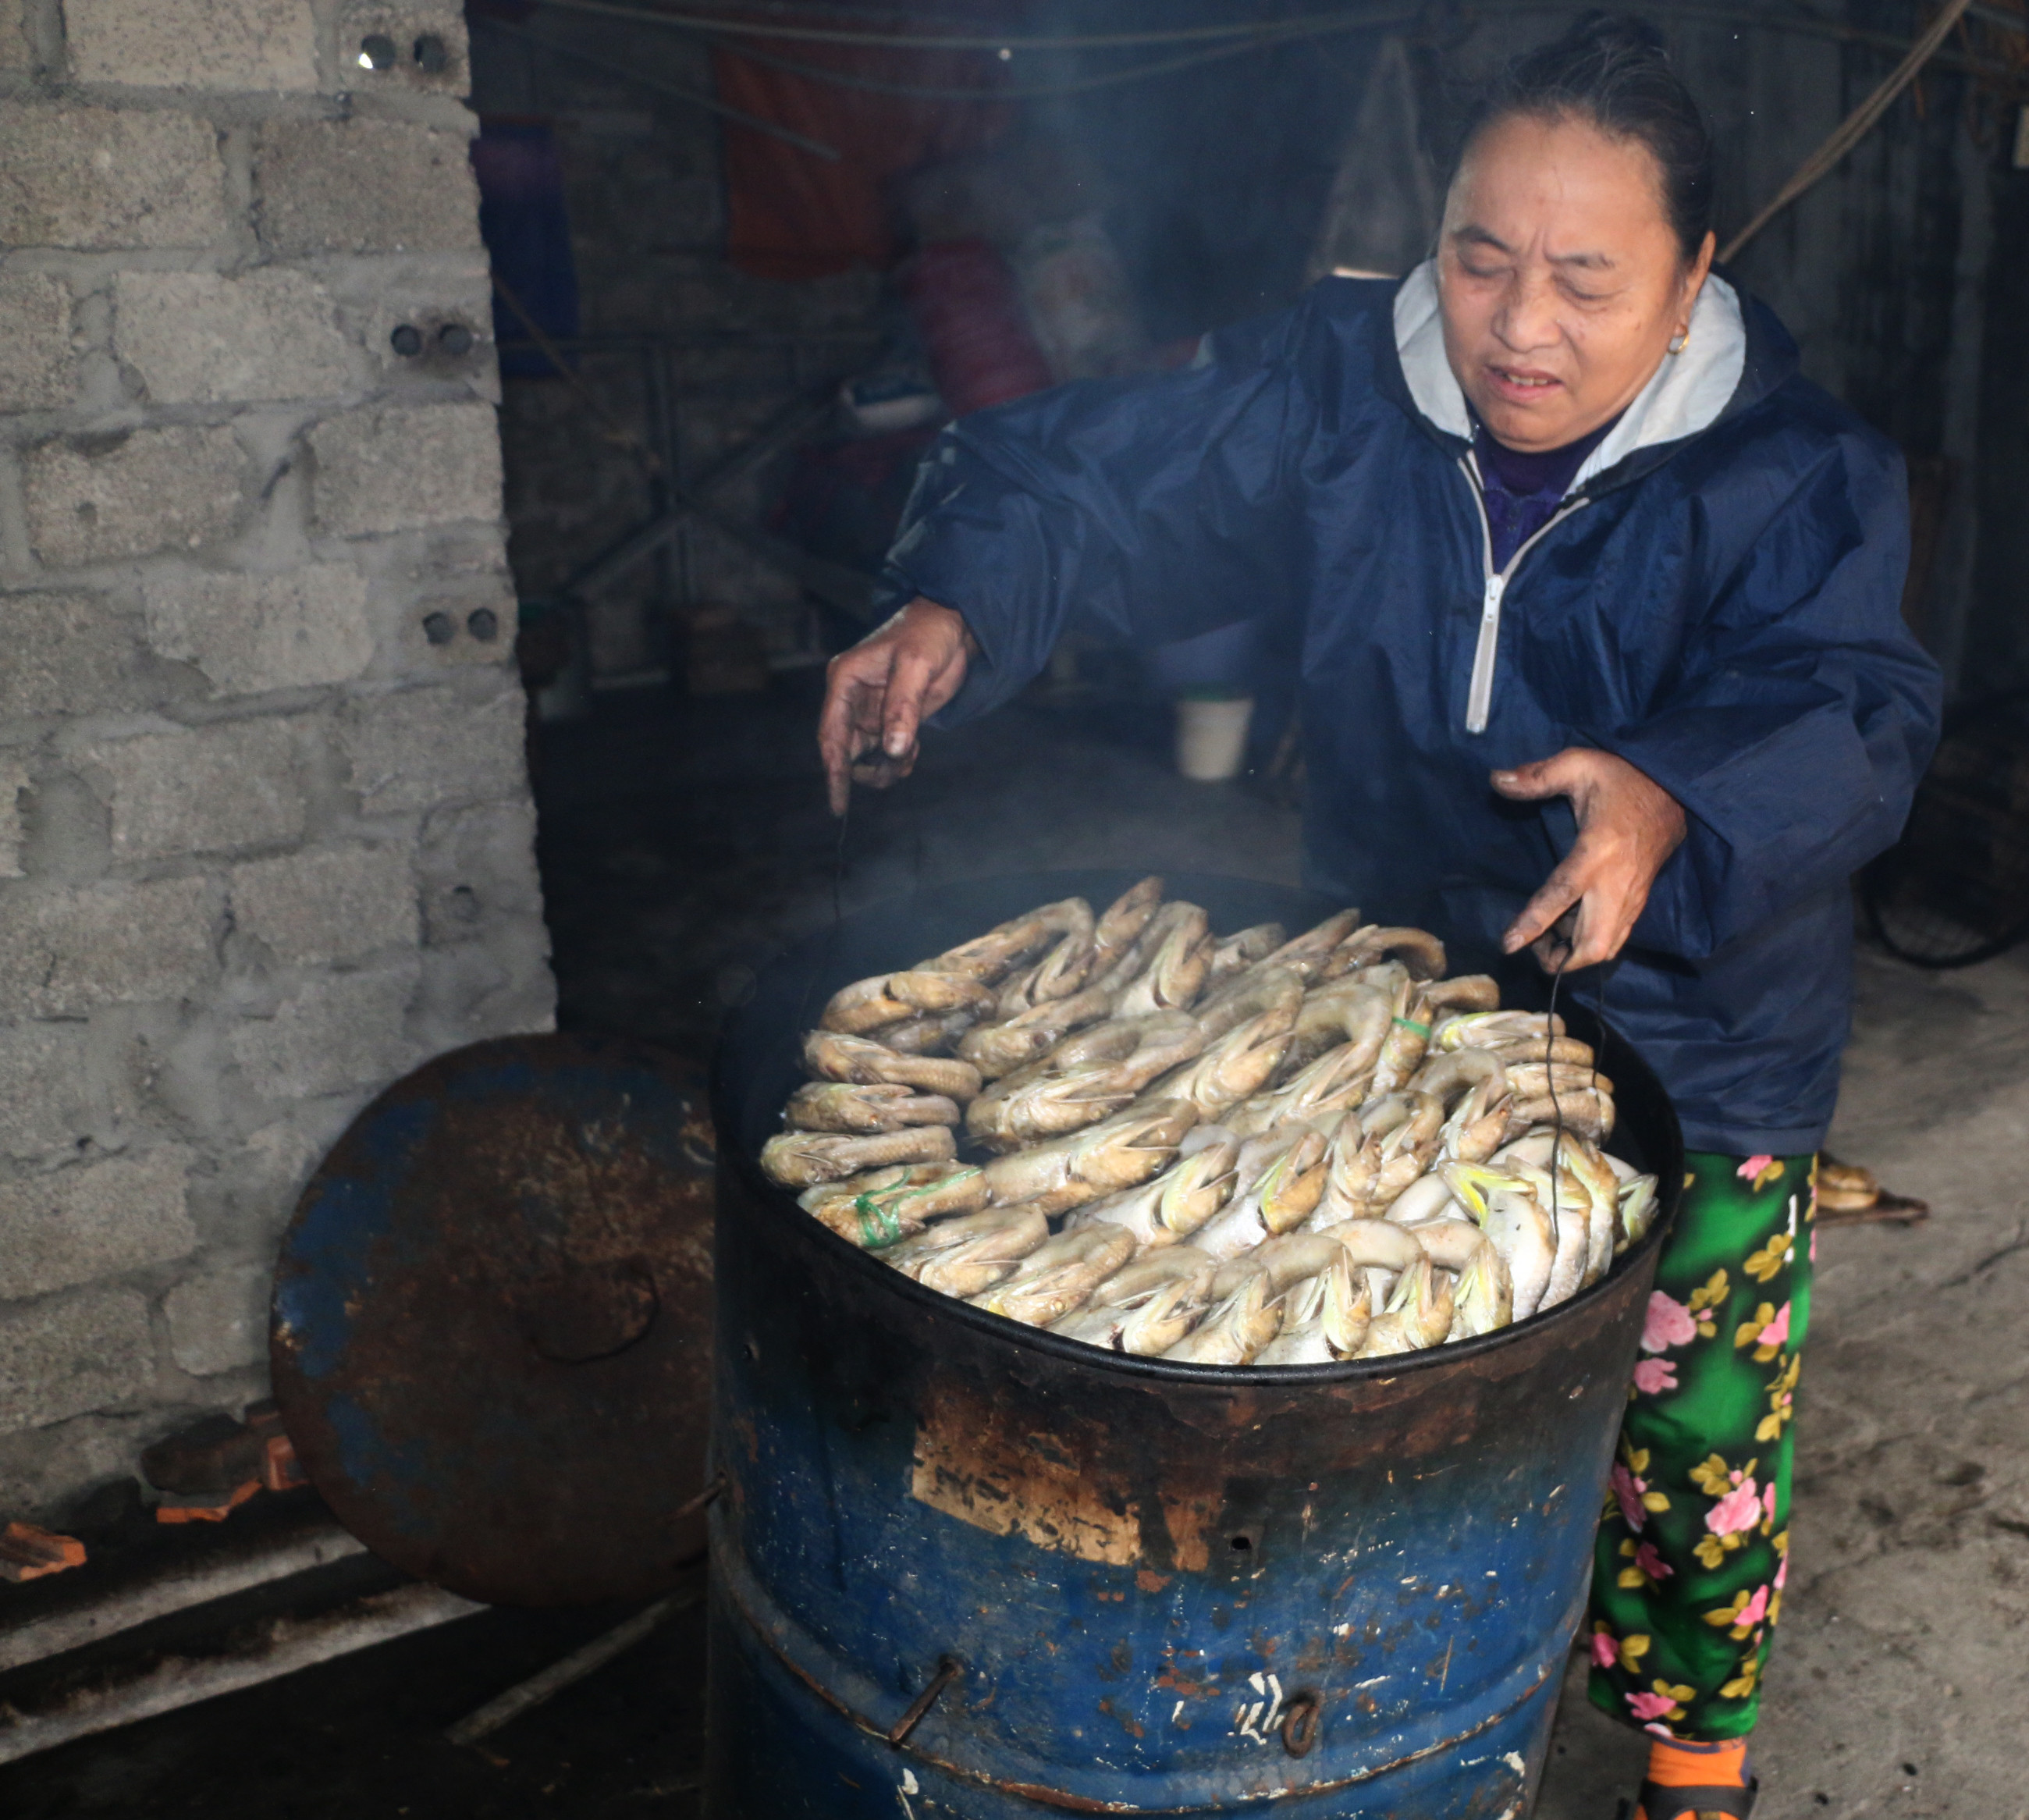 Bí quyết riêng của người dân làng chài Nghi Thủy để tạo vị thơm ngọt và màu vàng bắt mắt cho cá thửng là xông bằng bã (vỏ) mía. Ảnh: Thanh Phúc